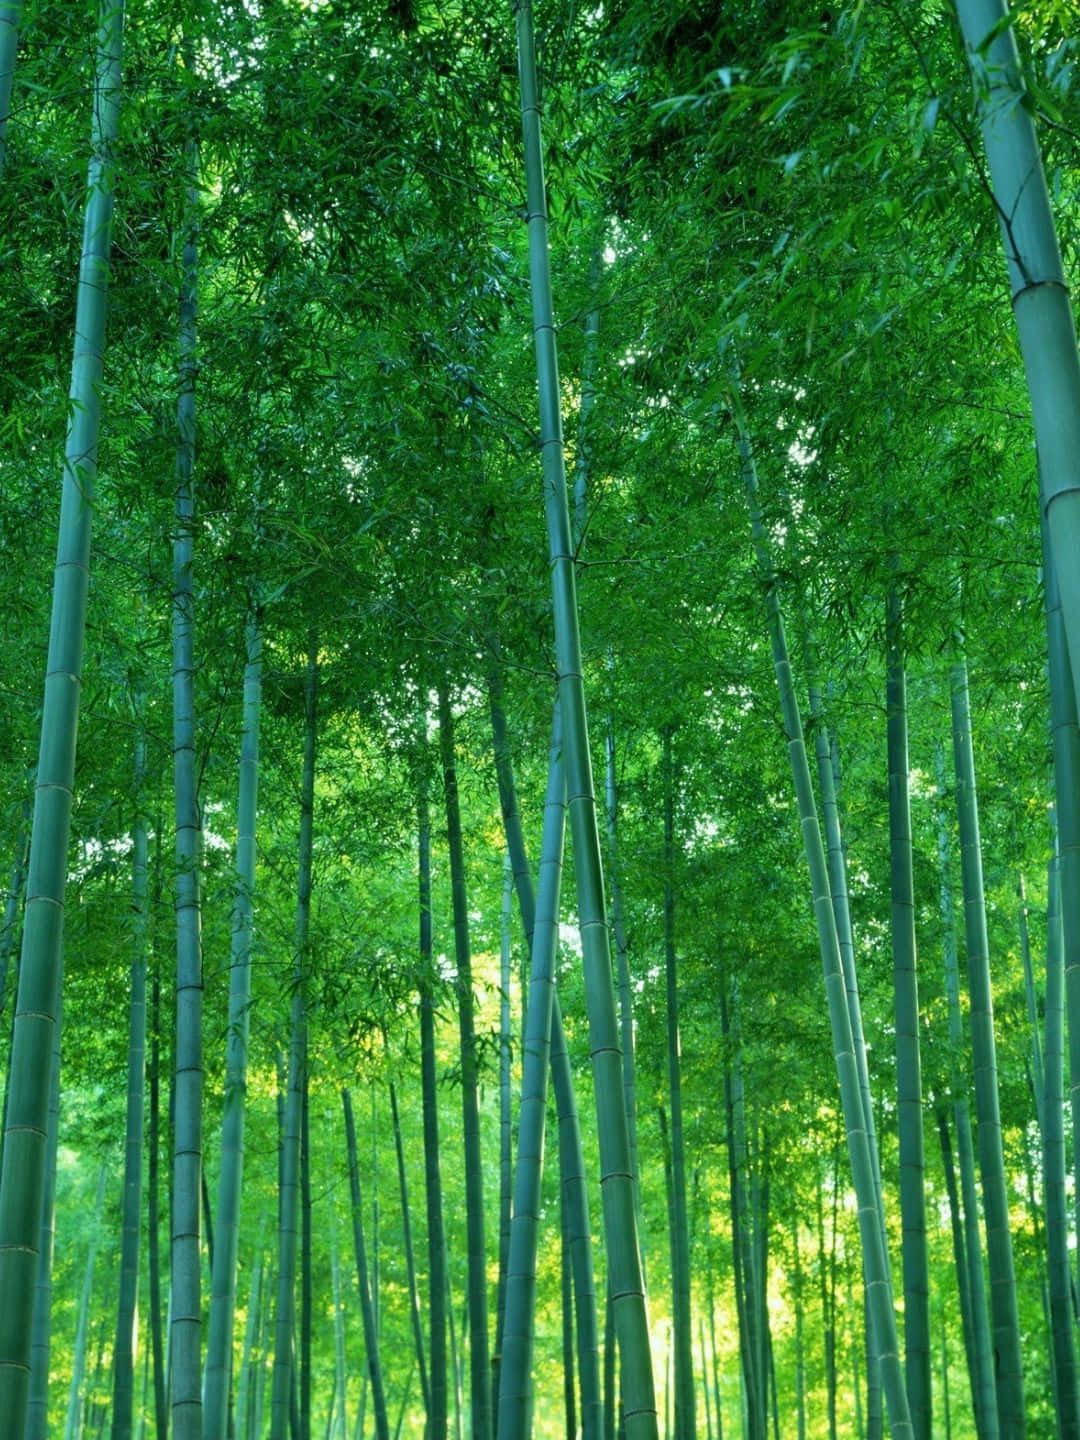 1440p Bamboo Background Dark Green Vibe